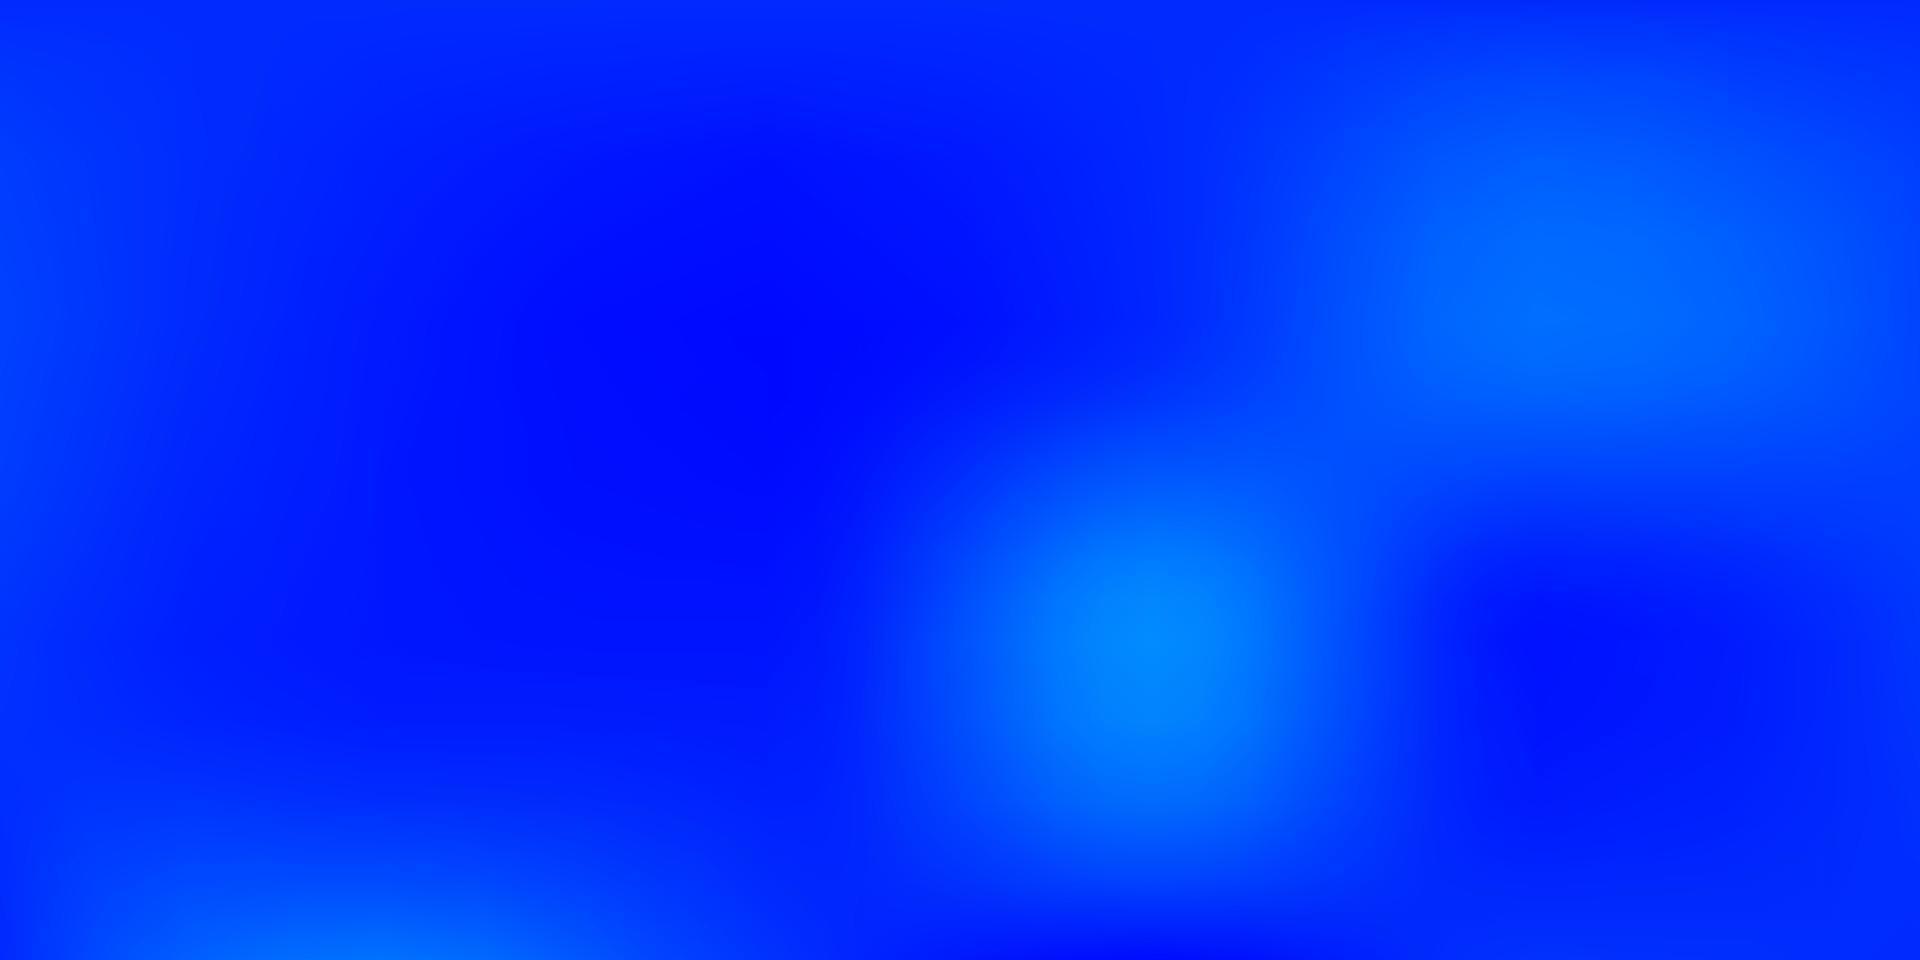 Light BLUE vector blur texture.